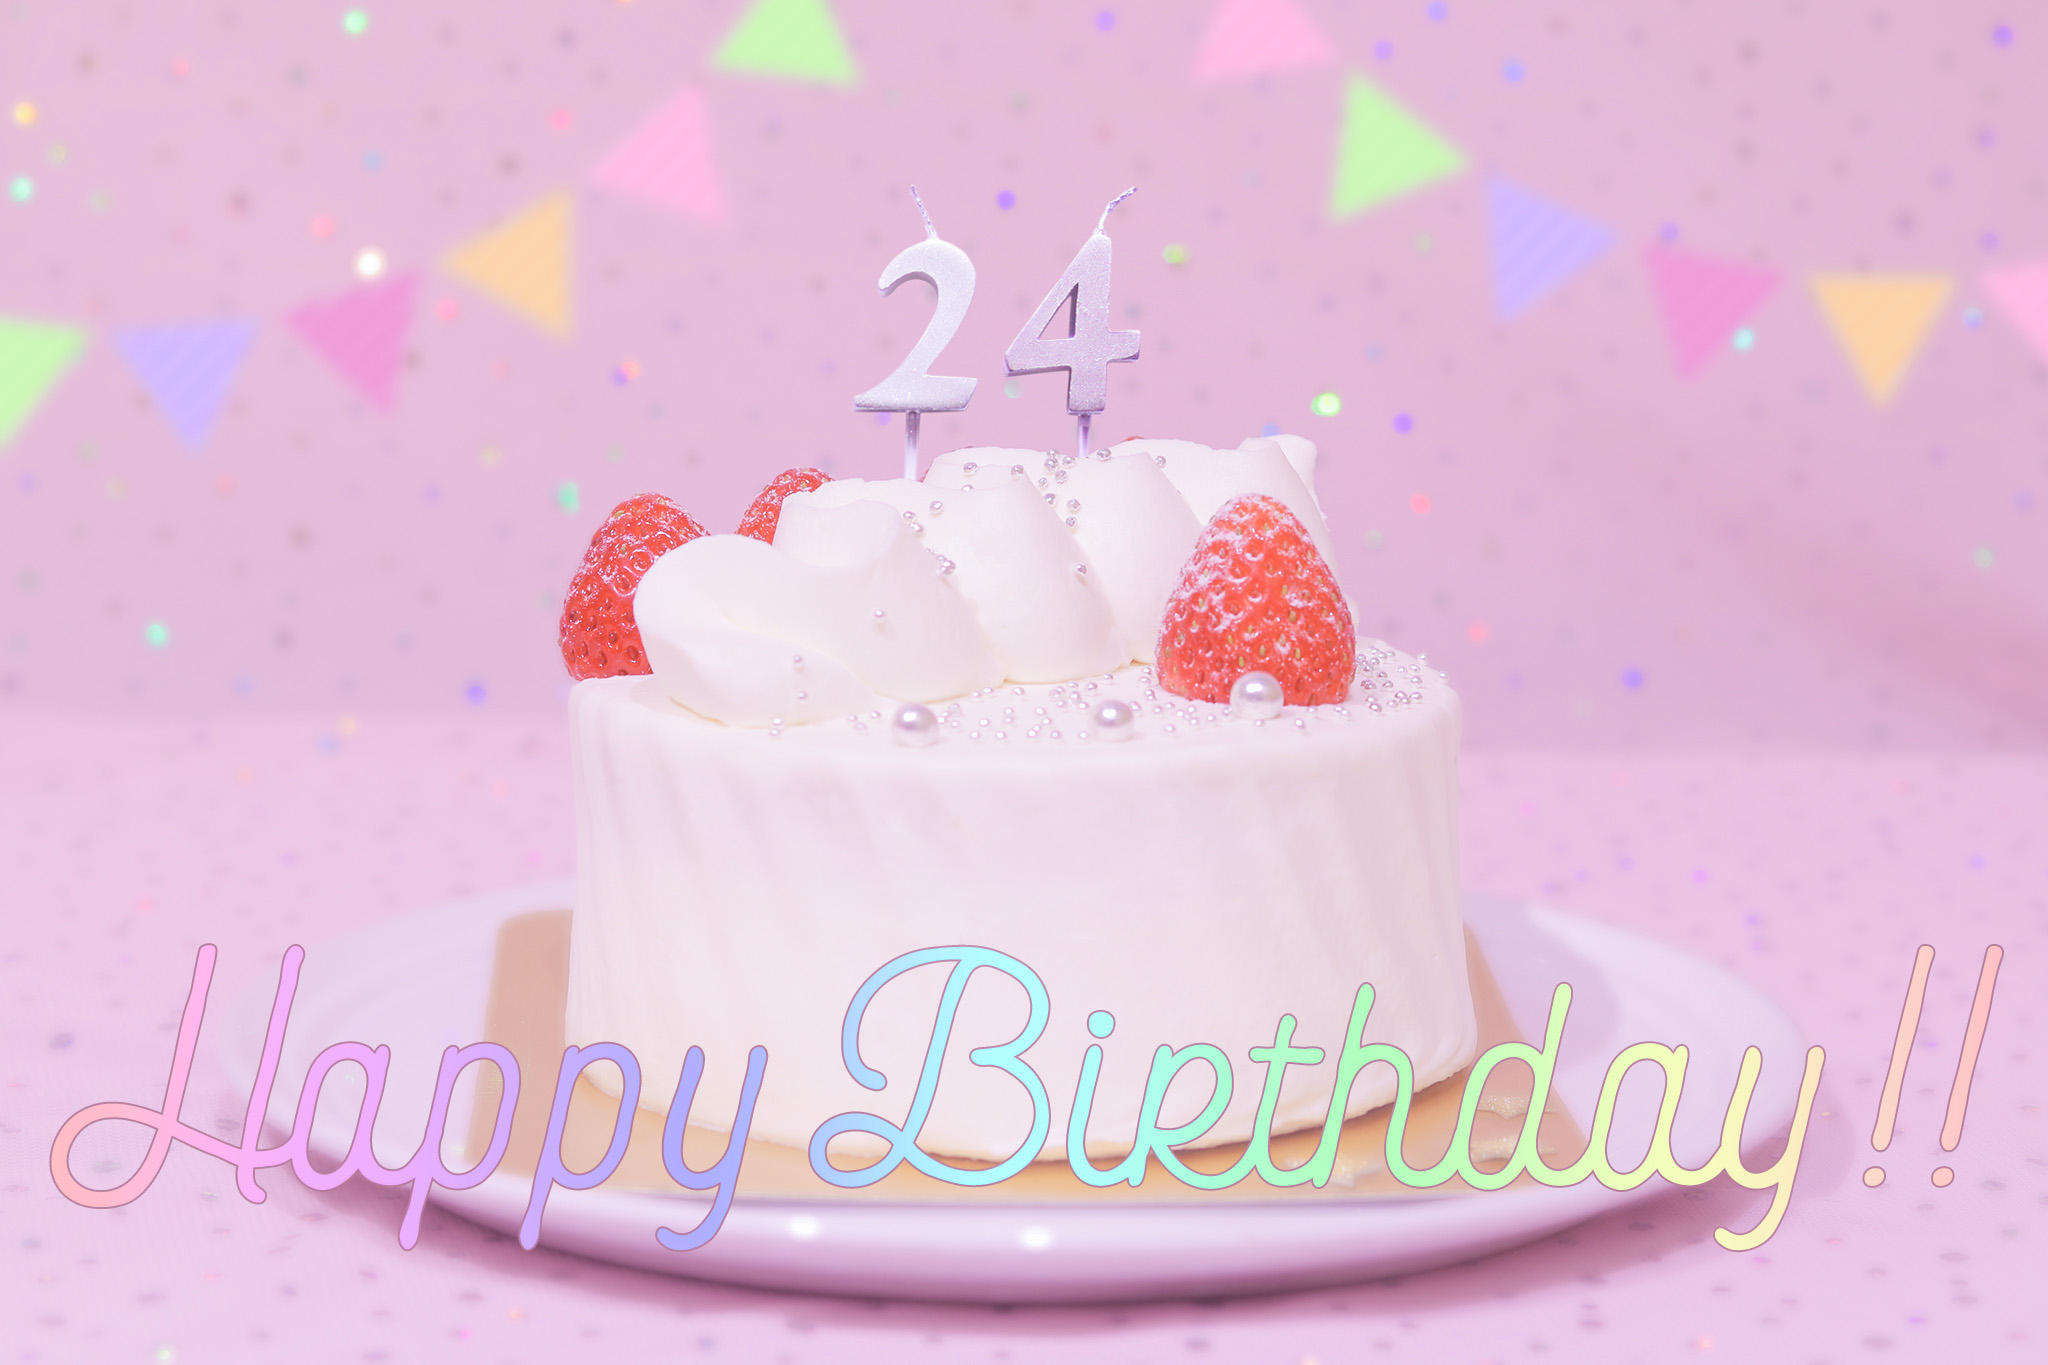 かわいい誕生日画像 ケーキとパステルカラーで可愛くお祝い 24歳編 のフリー画像 おしゃれなフリー写真素材 Girly Drop